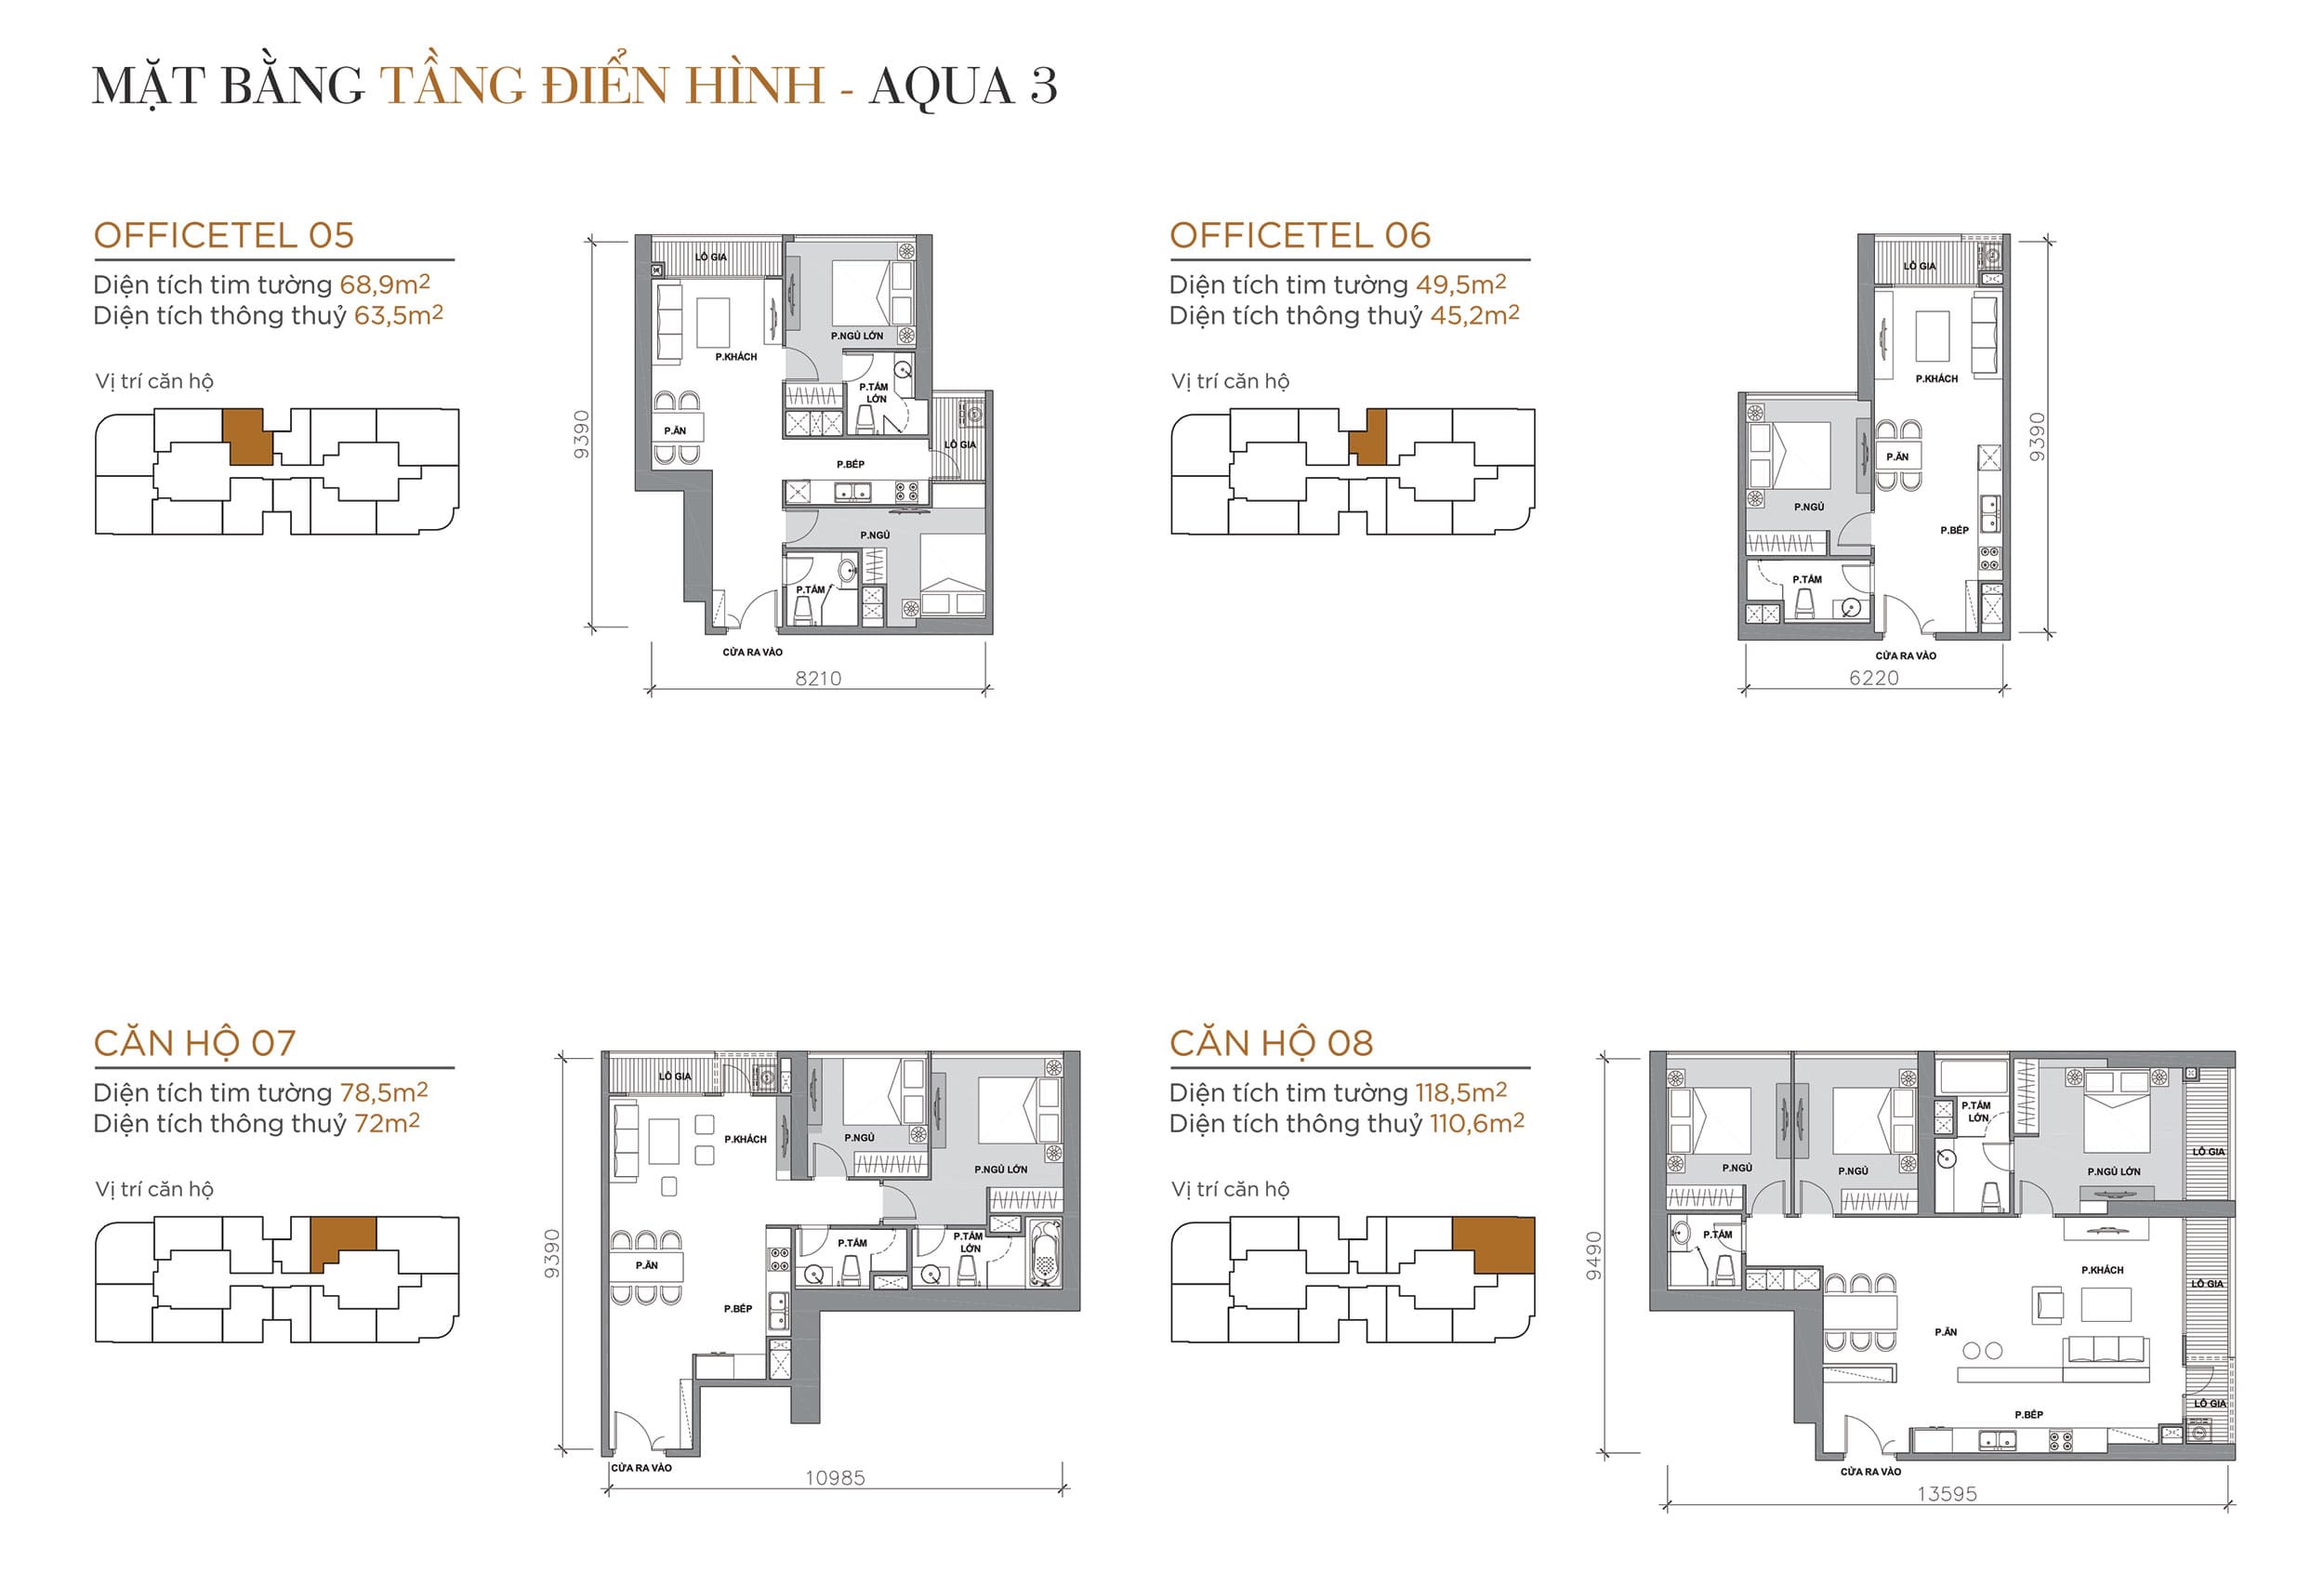 Layout thiết kế tầng điển hình Tòa Aqua 3 loại Officetel 05, Officetel 06, Căn hộ 07, Căn hộ 08.